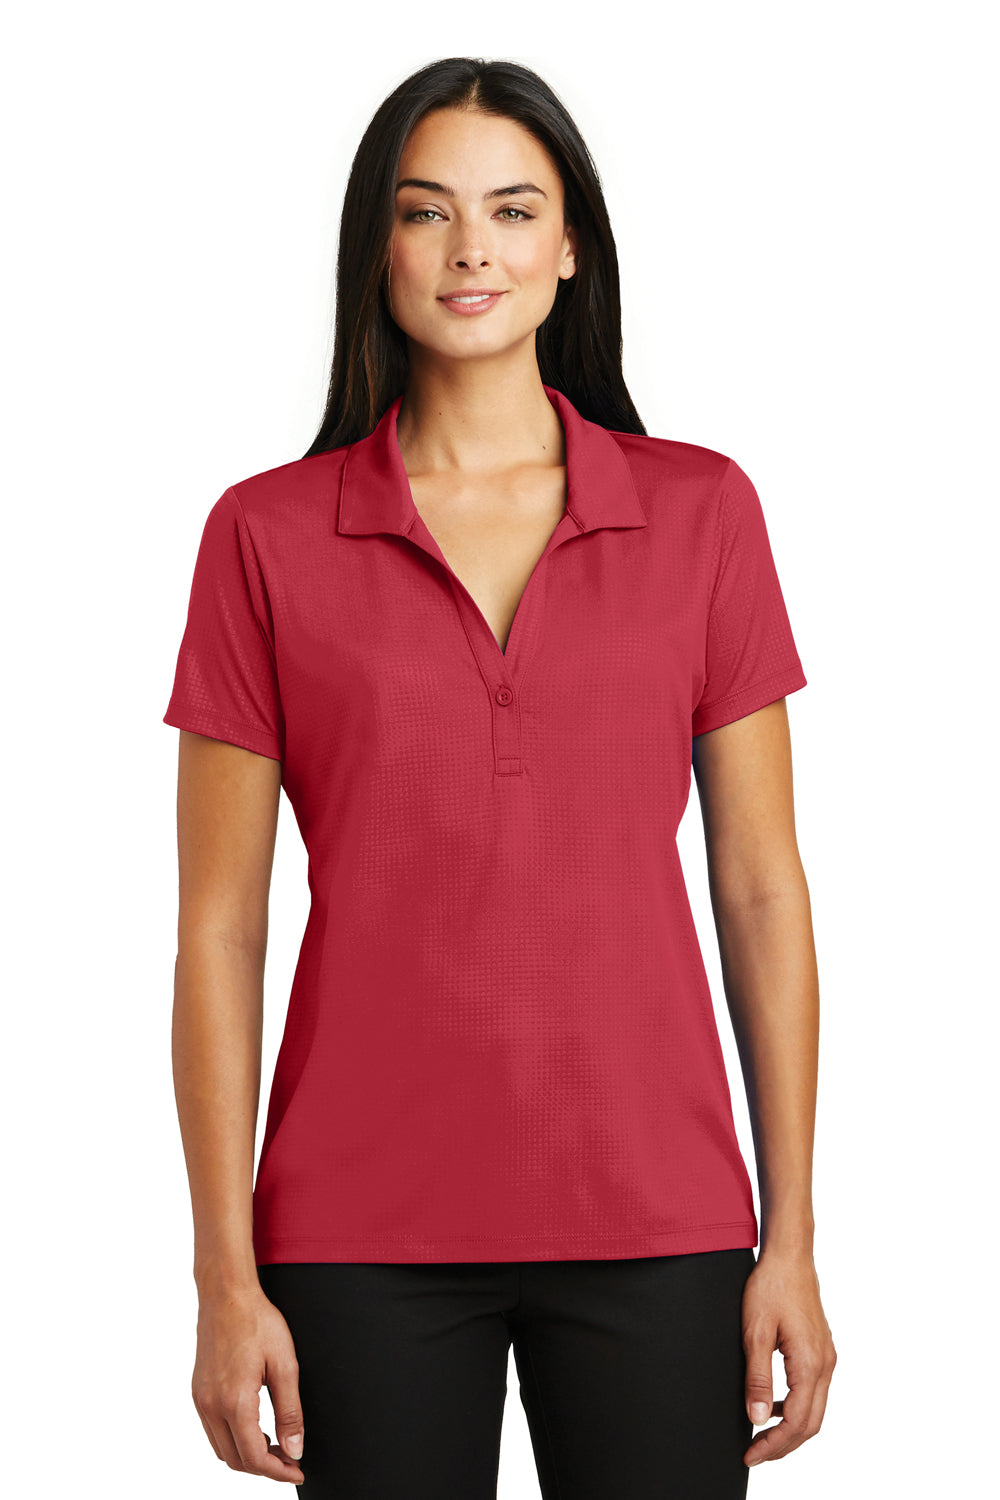 Sport-Tek LST630 Womens Tough Moisture Wicking Short Sleeve Polo Shirt Red Front